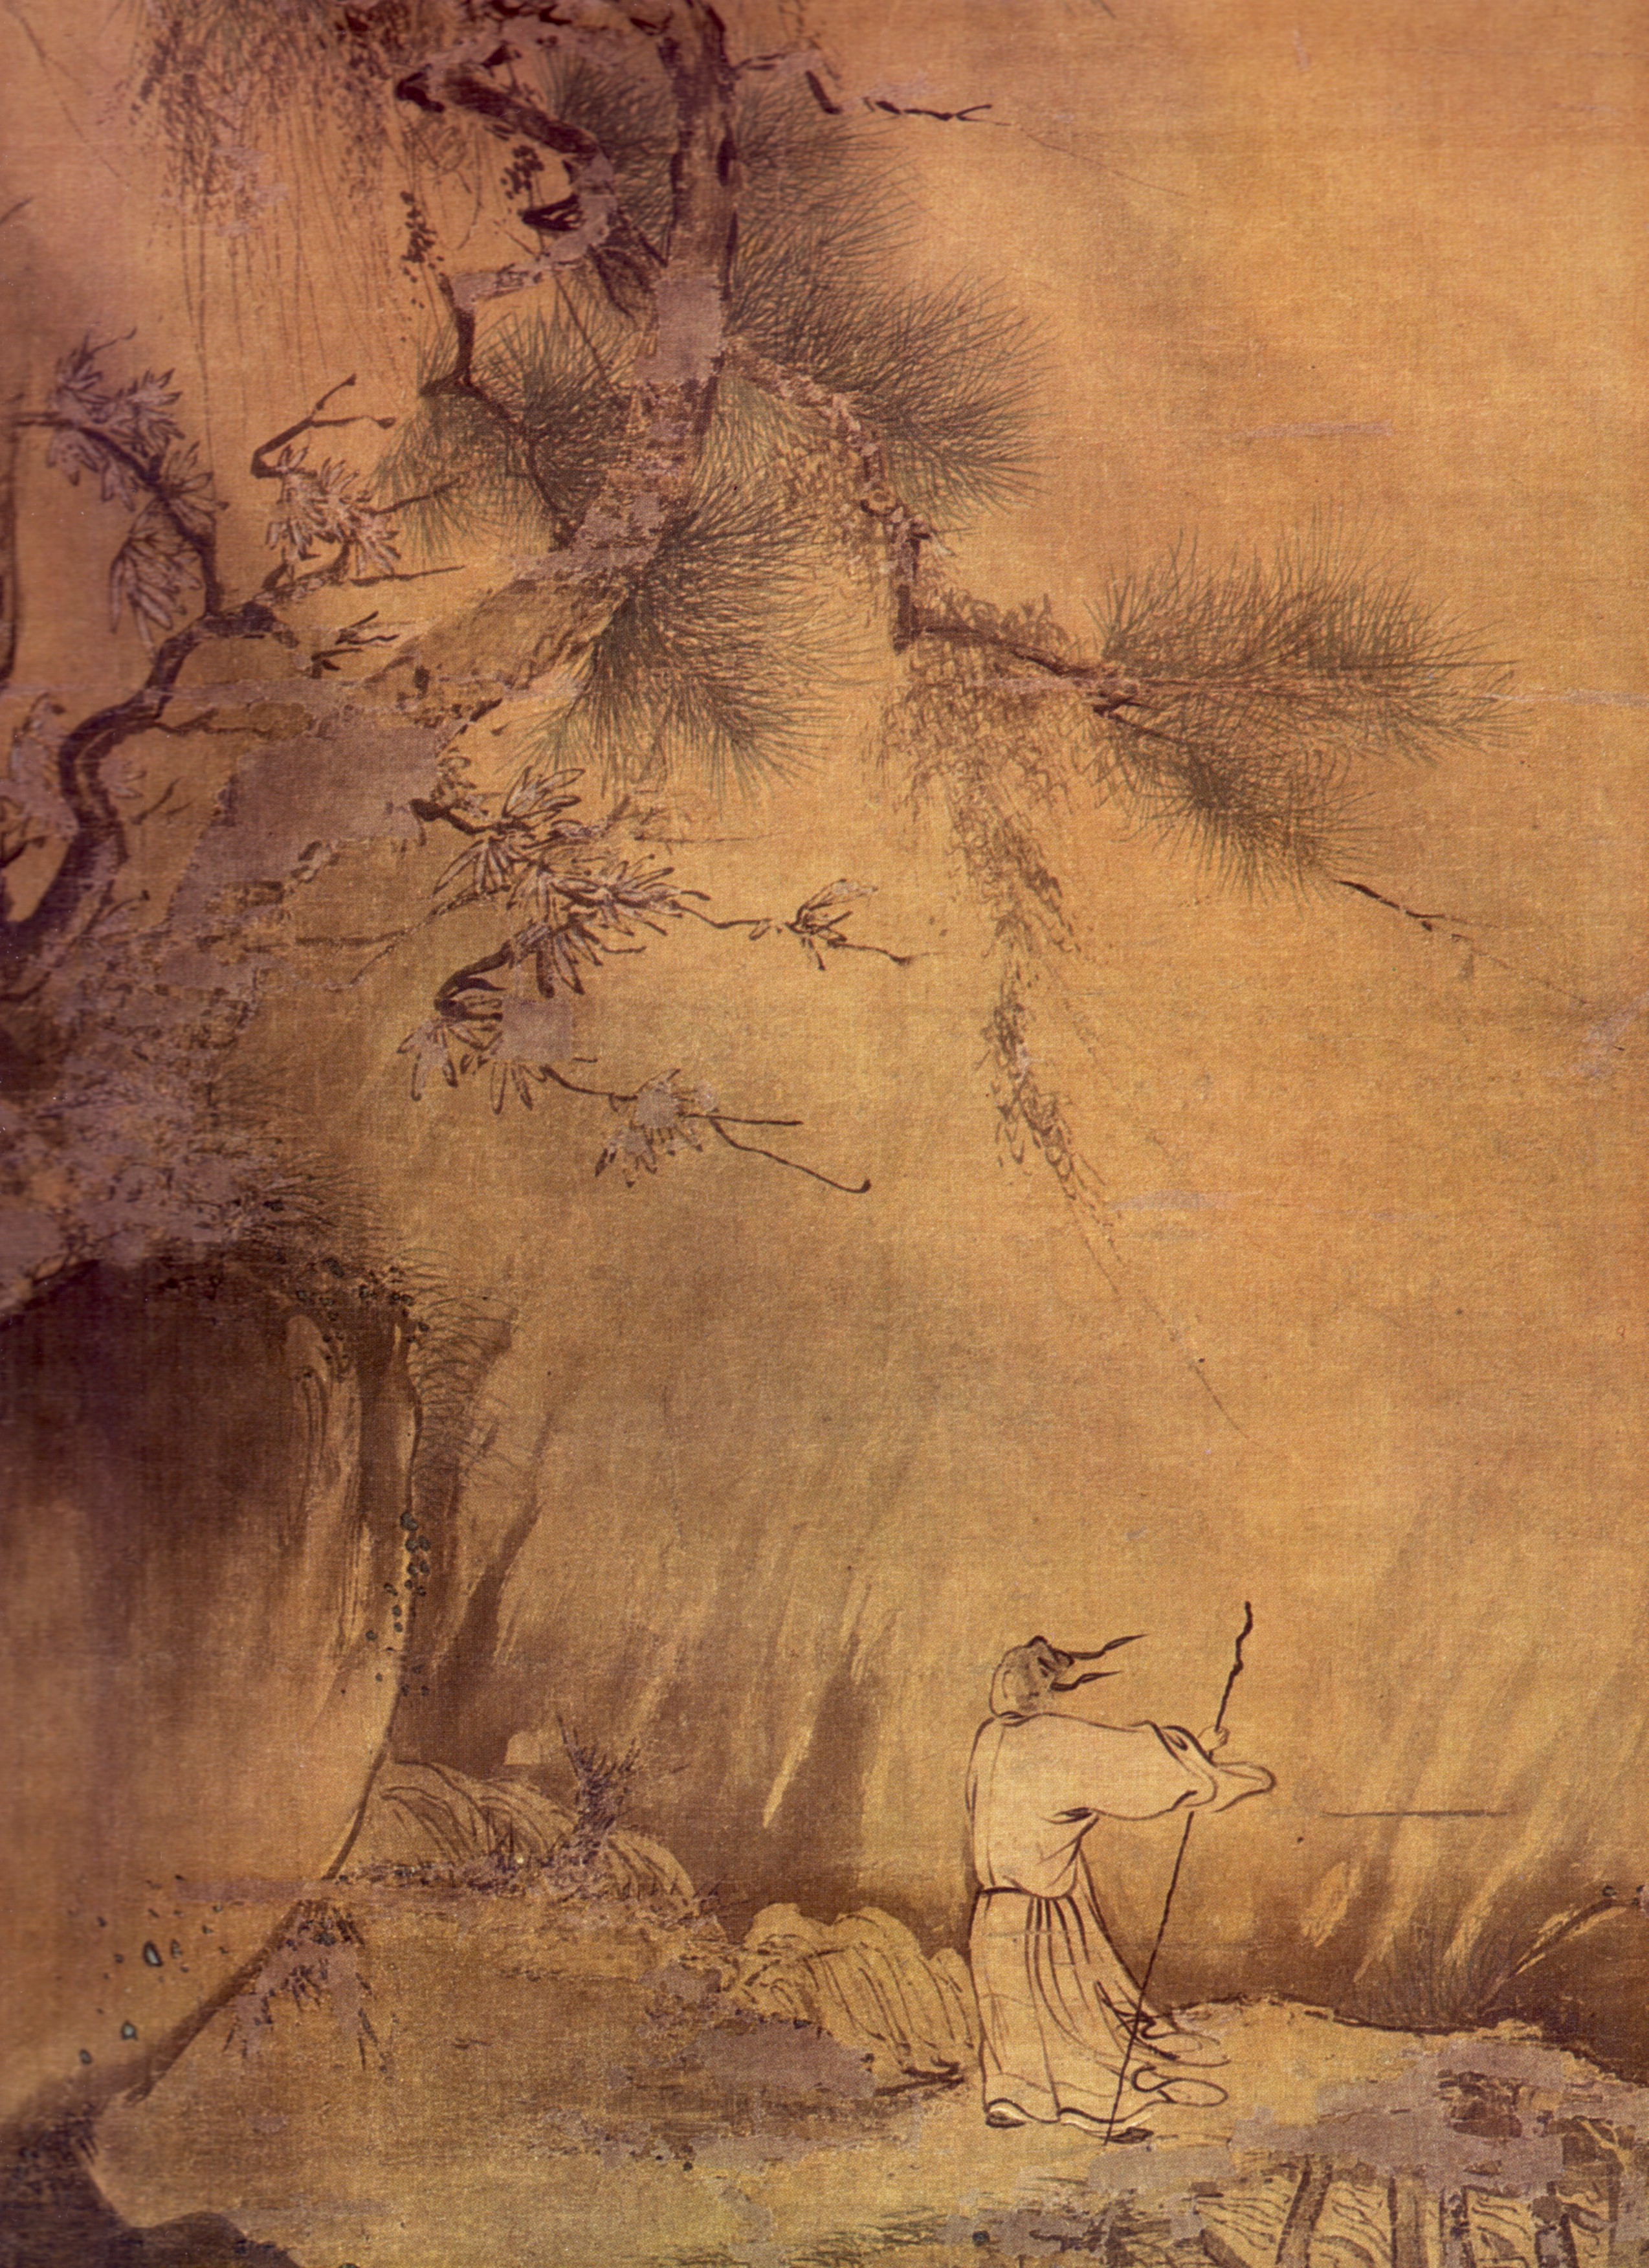 中国絵画史ノート 宋時代 南宋院体画、江南の自然へのまなざし